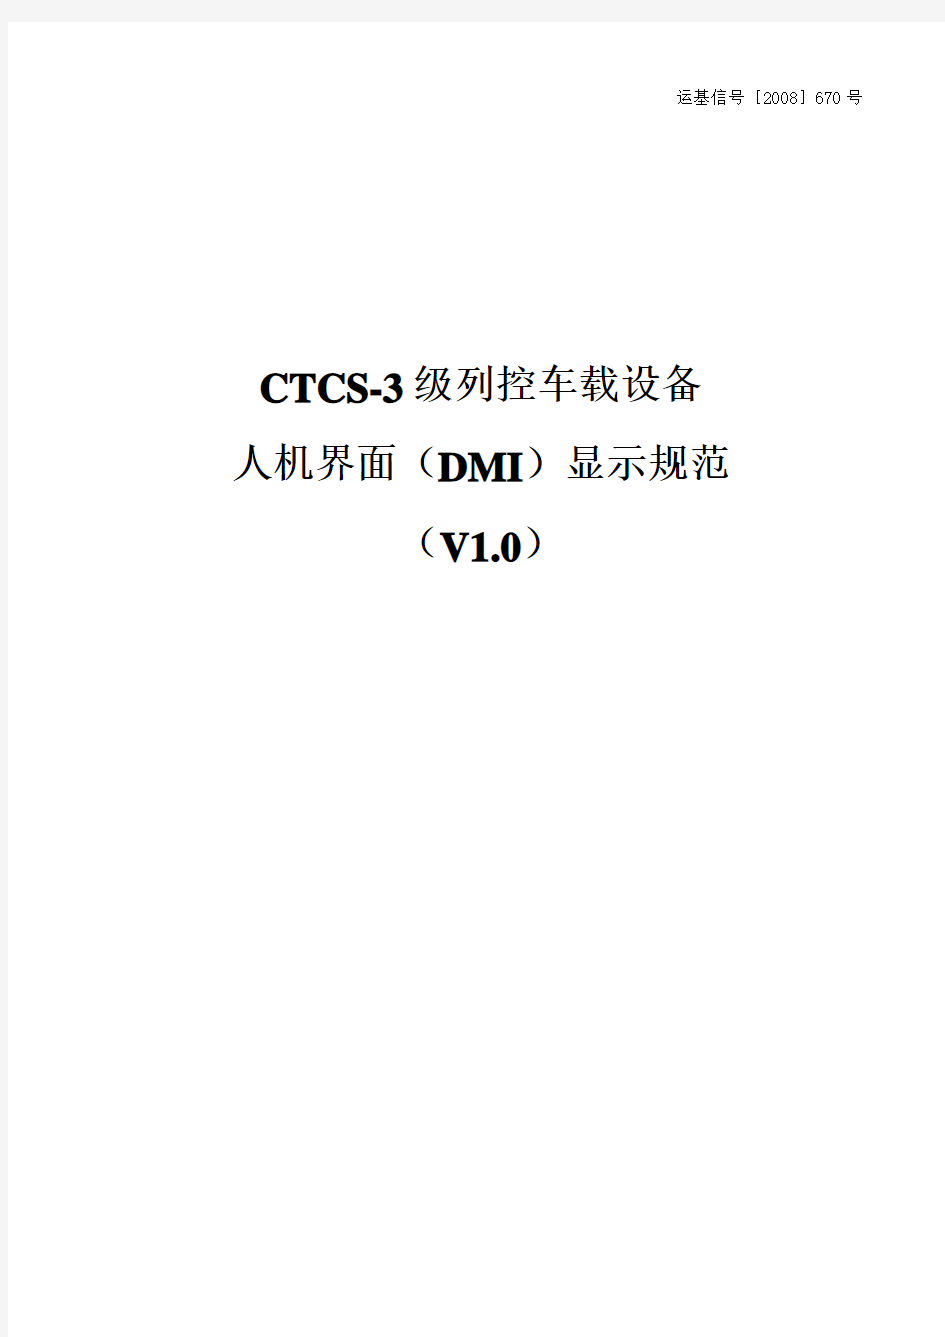 运基信号[2008]670号_CTCS-3级列控车载设备人机界面(DMI)显示规范(V1.0)[1]